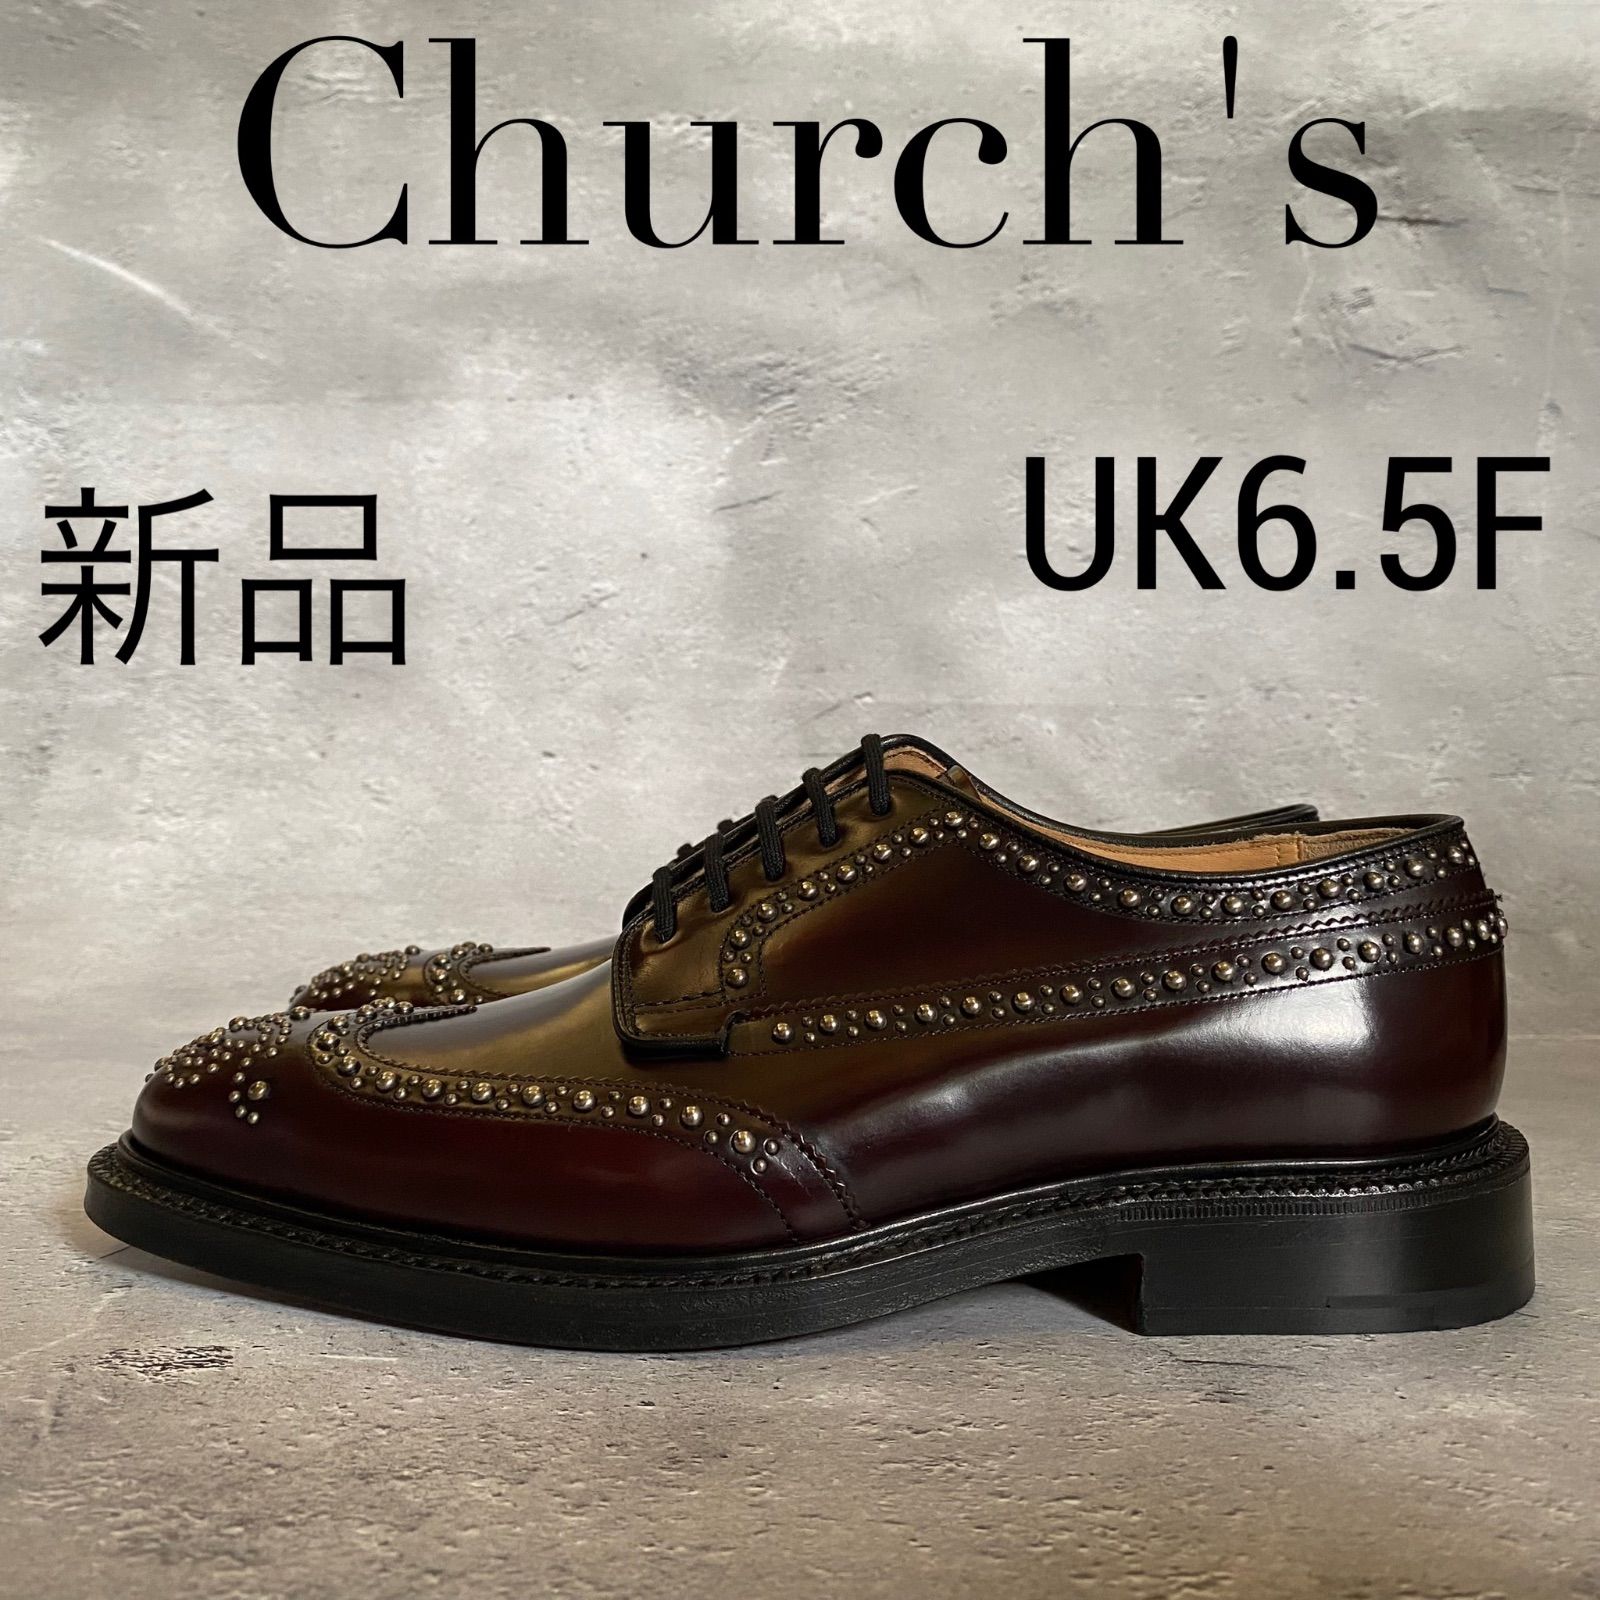 新品 Church's グラフトン ダービーブローグシューズ スタッズ 革靴